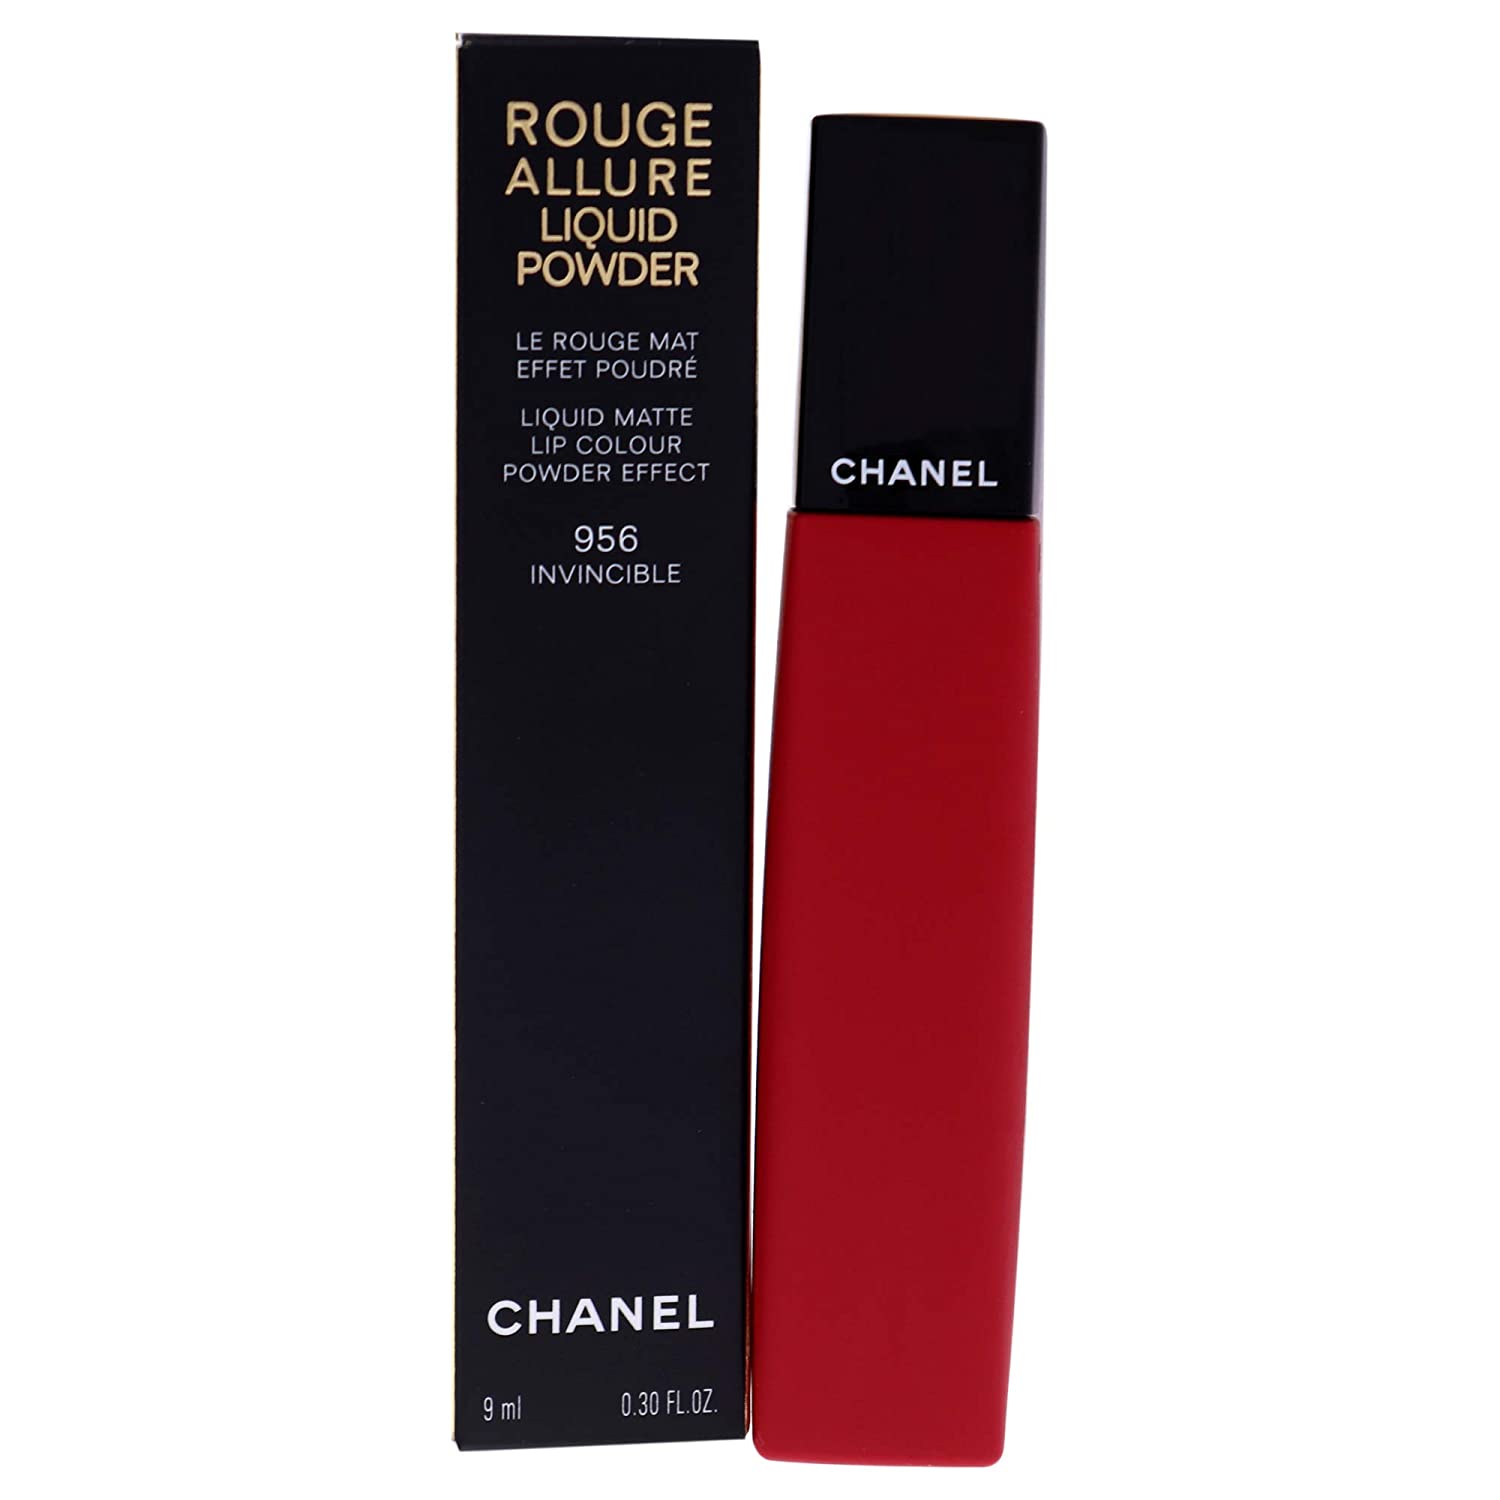 Chanel Rouge Allure Liquid Powder Care 956 Invincible 9 ml